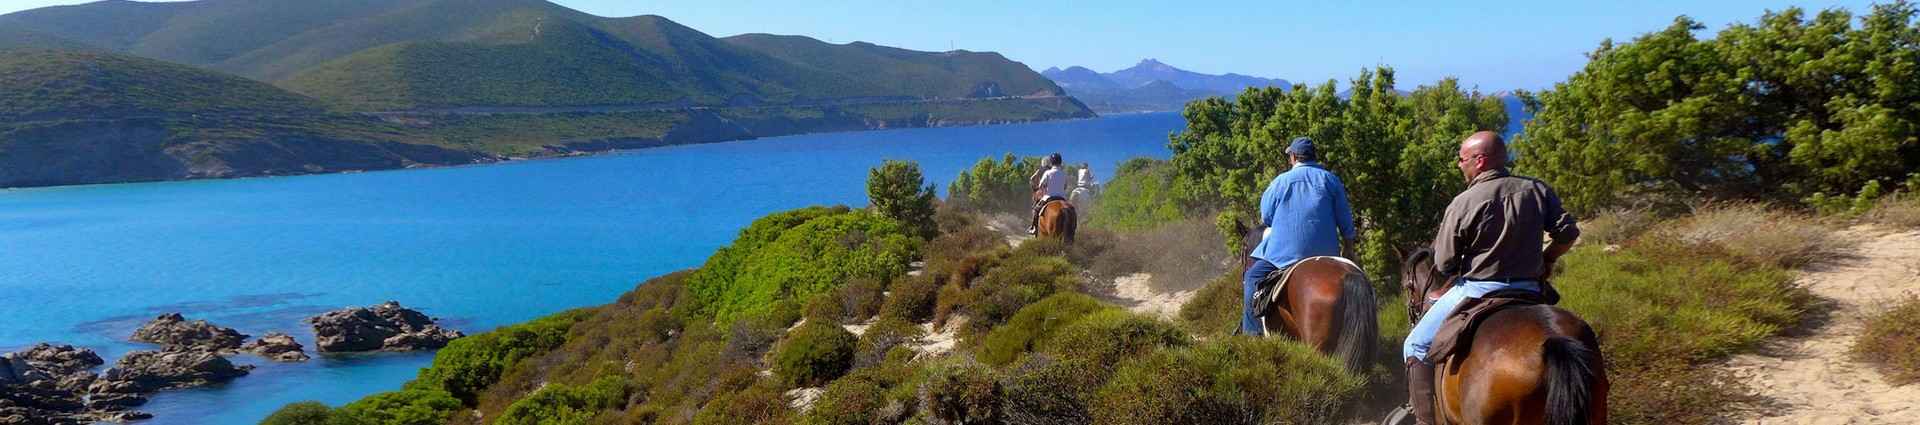 Rando à cheval en Corse